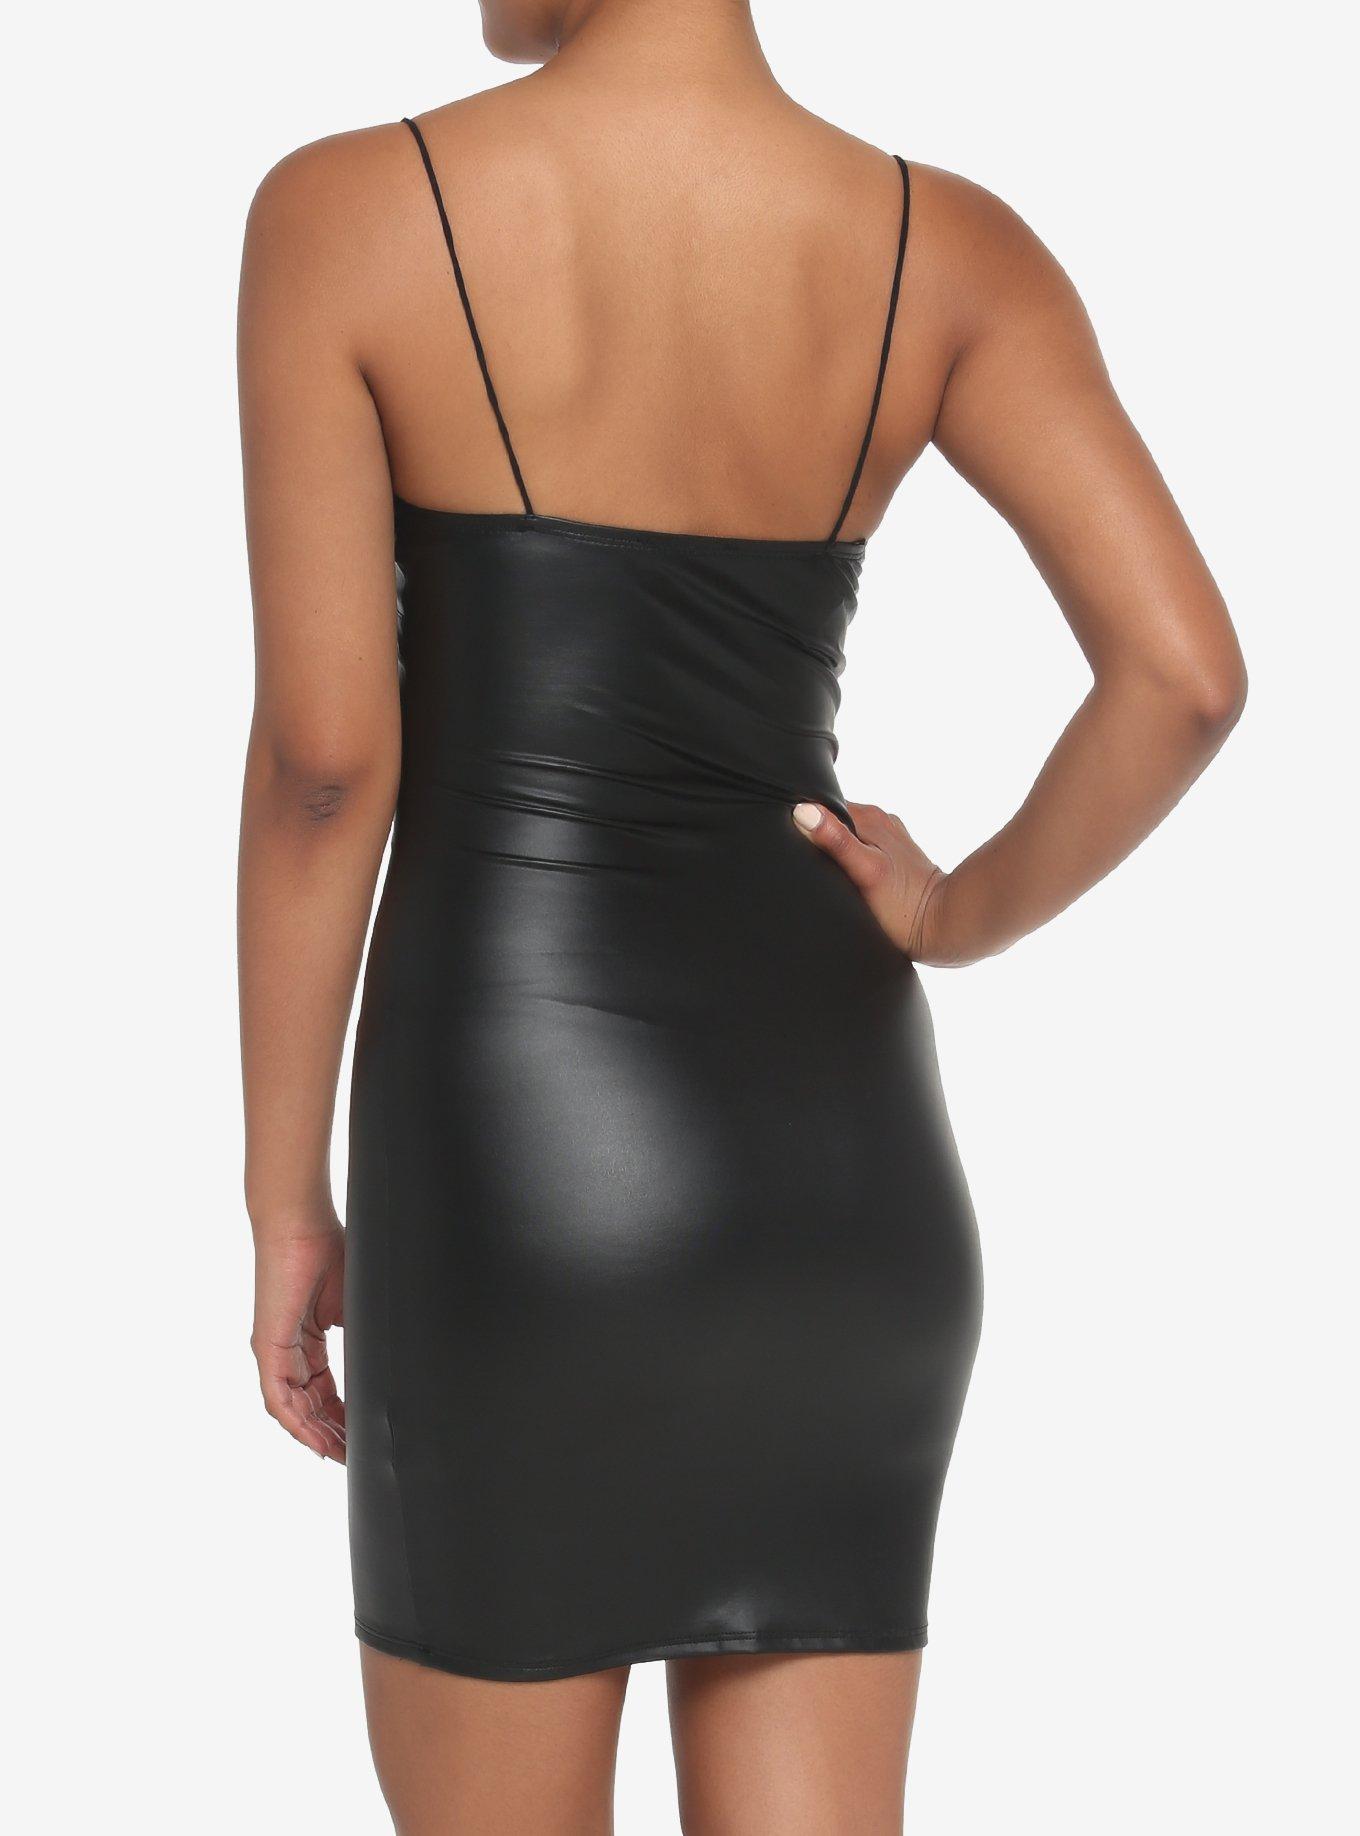 Black Faux Leather Lace V-Neck Mini Dress, BLACK, alternate